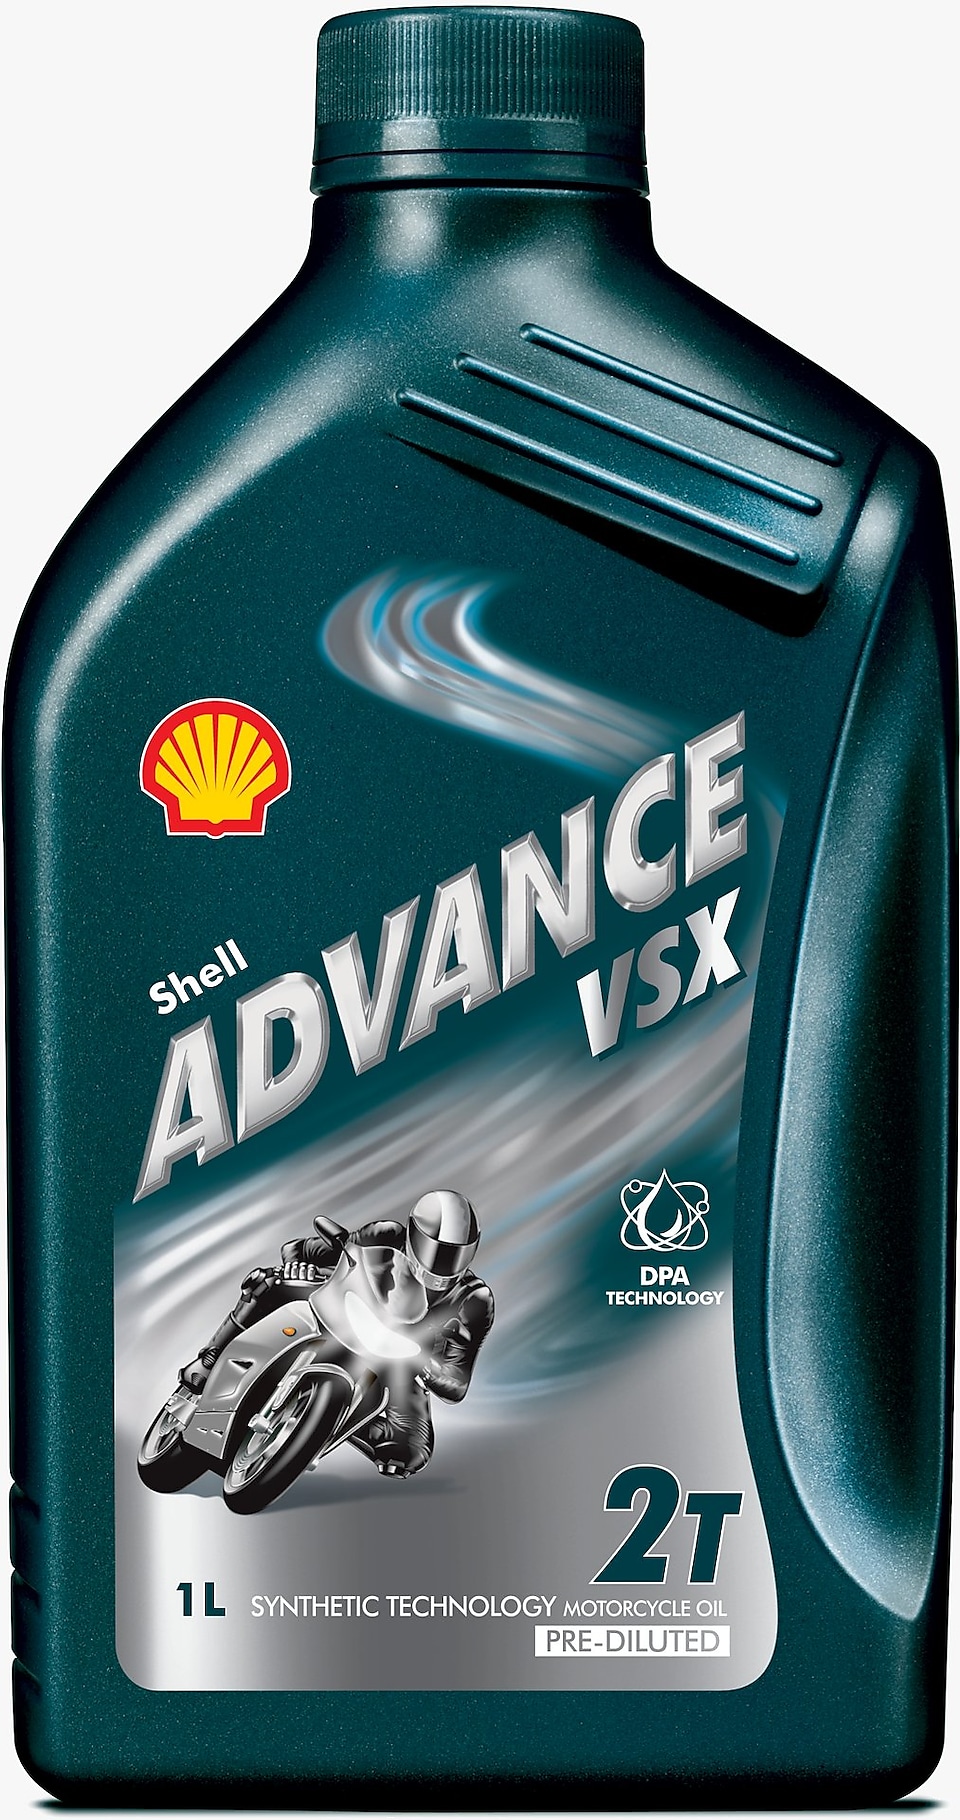 Shell Advance VSX 2 ürün fotoğrafı